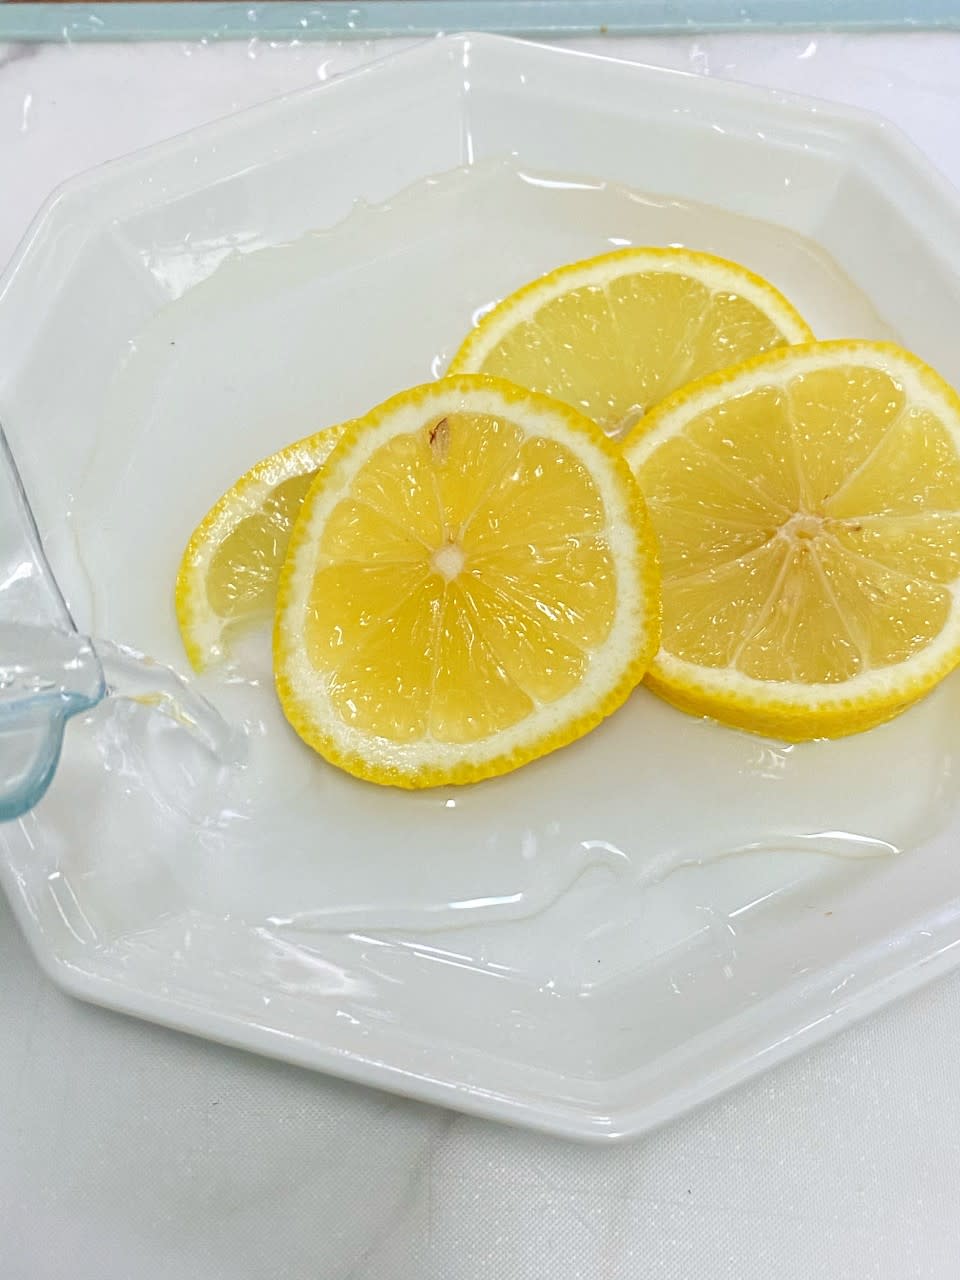 微波爐清潔│洗微波爐簡單大法 去怪味洗厚漬一隻檸檬就搞掂？